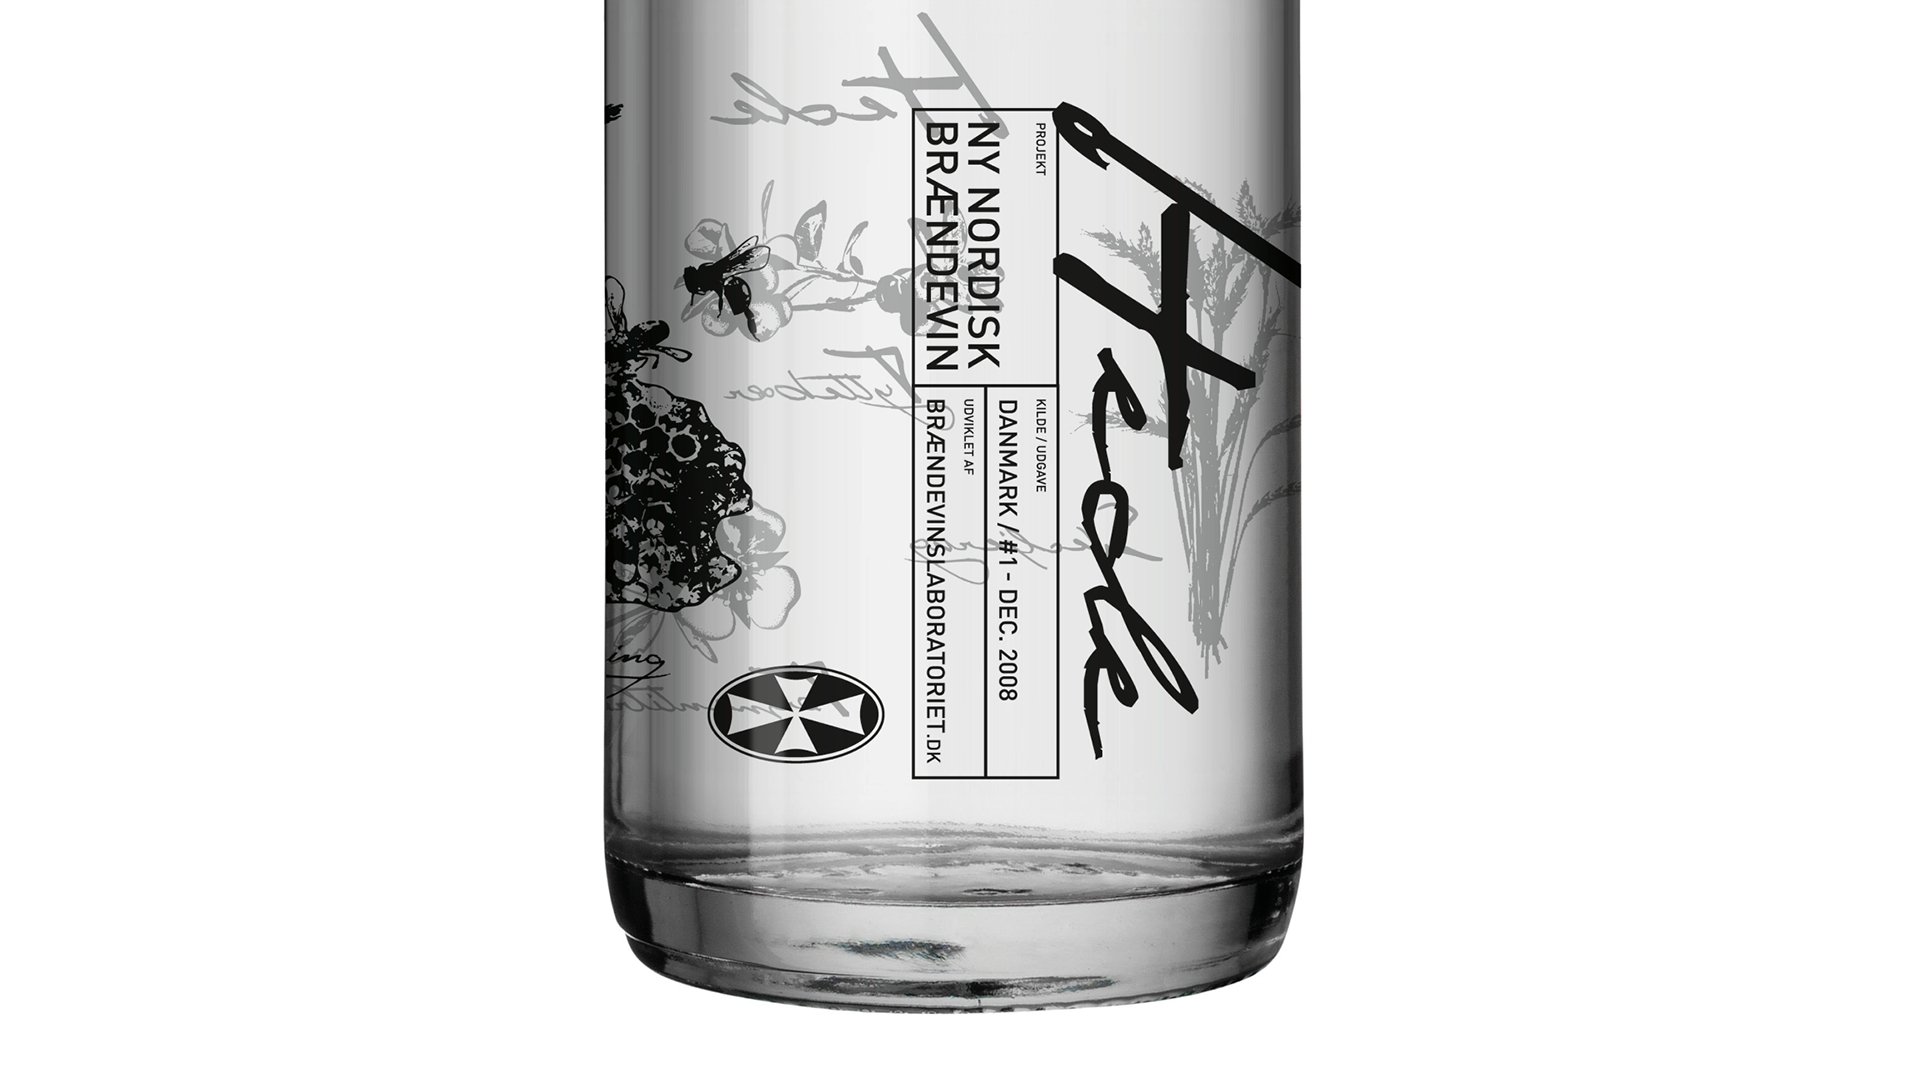 Pernod Ricard Nordic label design to 'Ny Nordisk brændevin' by LOOP Associates